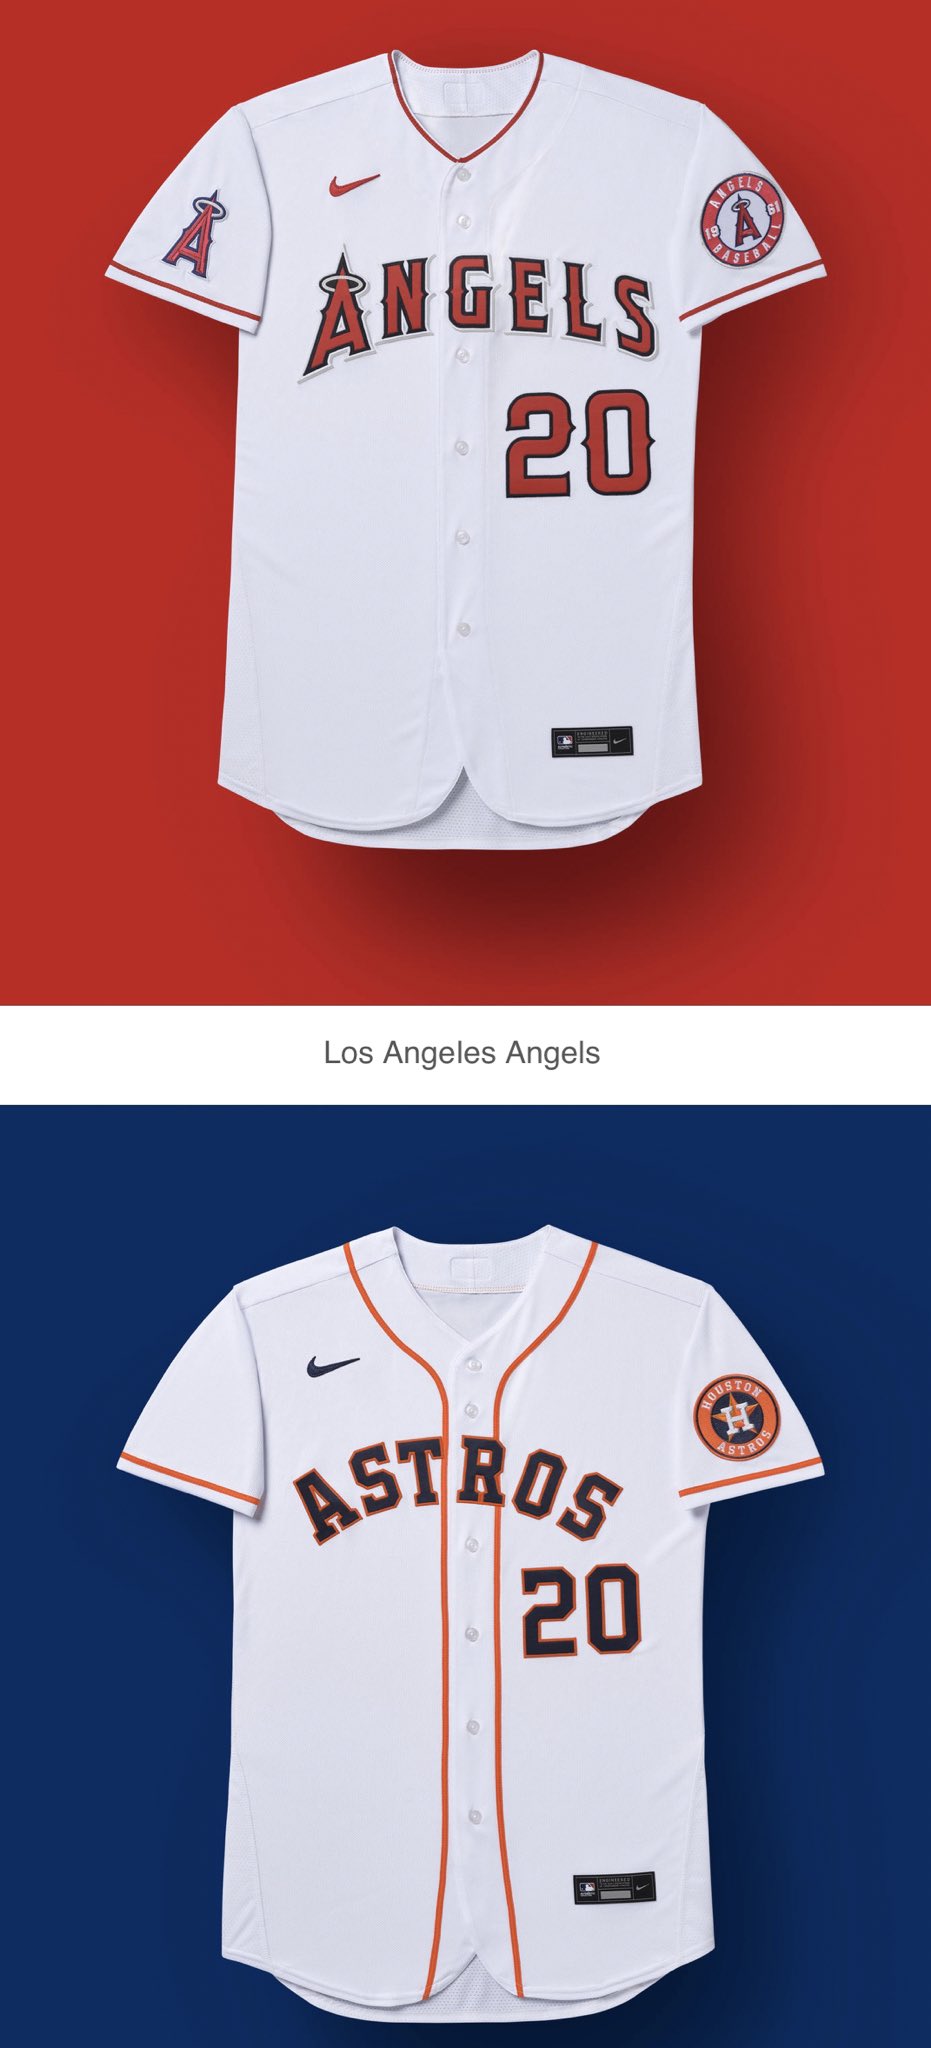 Nuevo uniforme Astros temporada 2020 Grandes Ligas